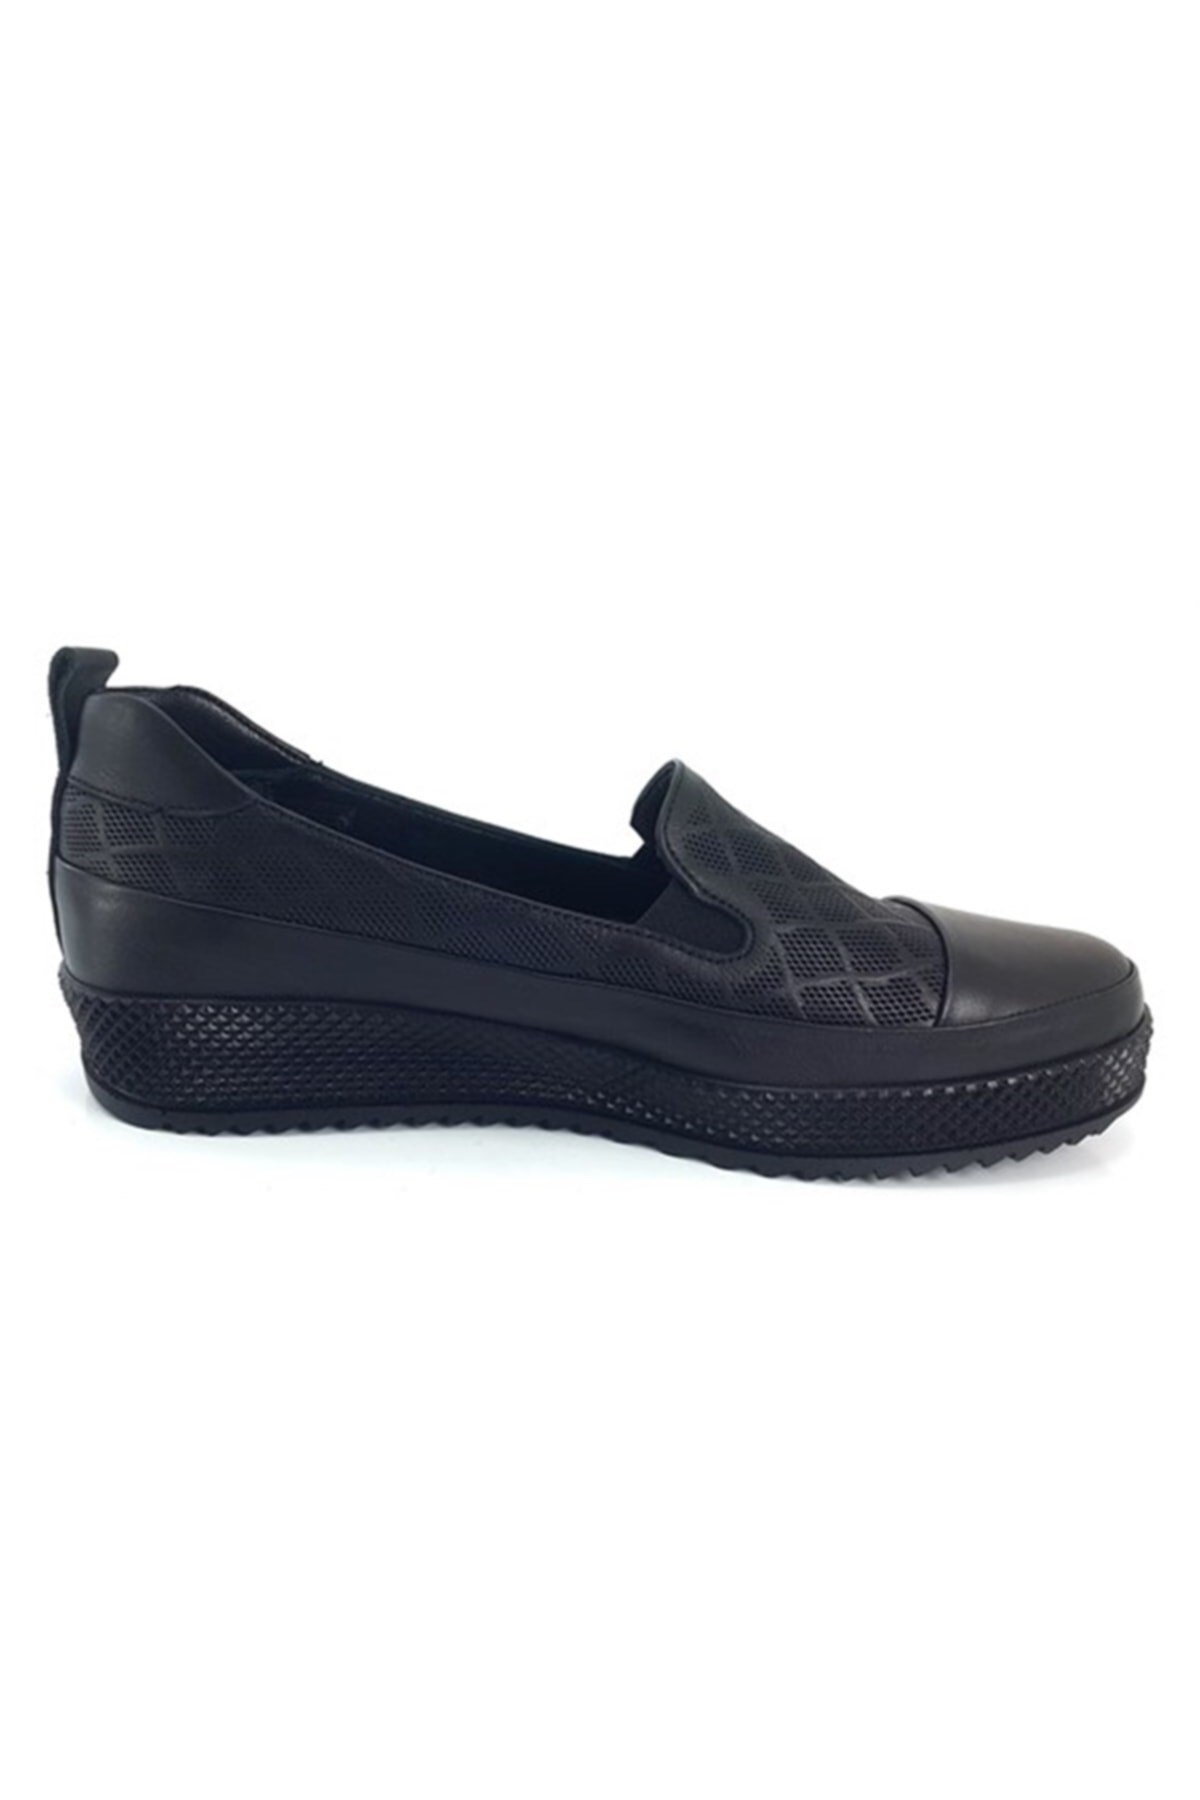 Mammamia Kadın Ayakkabı D22YA-3415 Siyah Pen